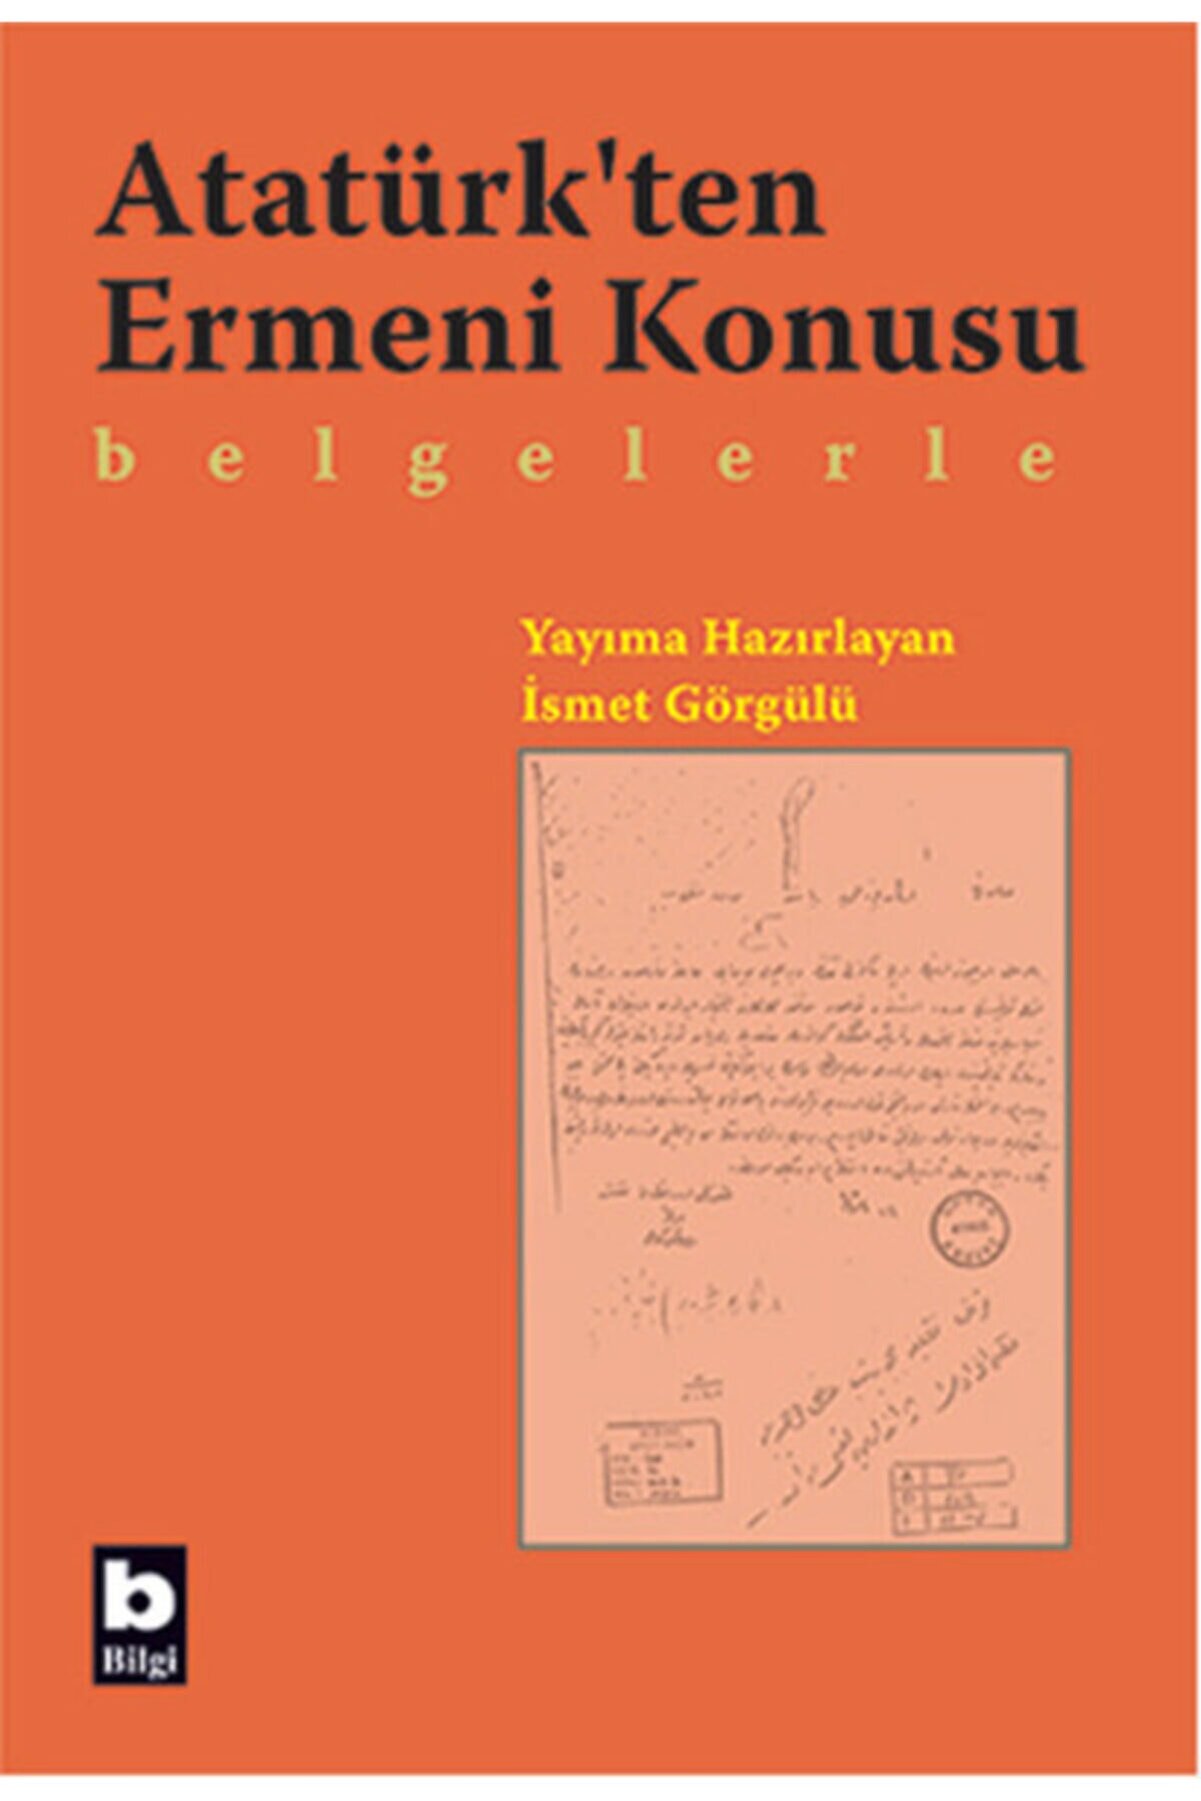 Bilgi Yayınevi Atatürk'ten Ermeni Konusu Belgelerle